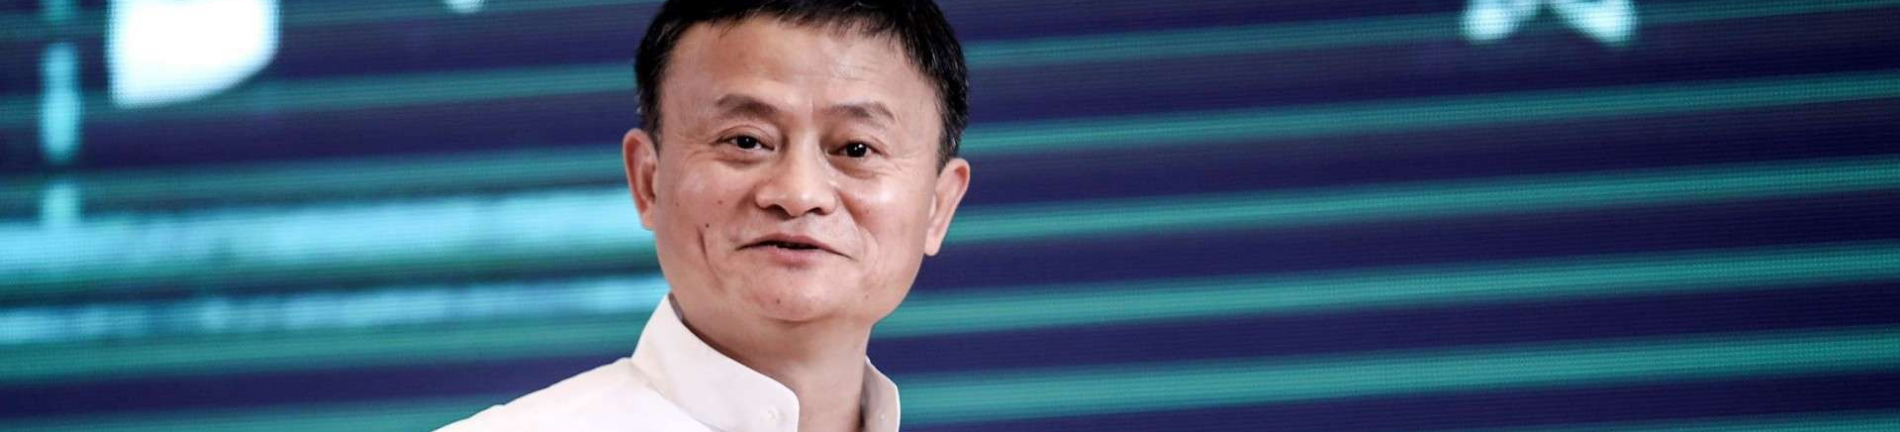 Джек ма (alibaba): 7 фактов о создателе самой дорогой интернет-компании азии китайская торговая платформа alibaba обгоняет по обороту amazon и ebay, вместе взятые. как выходцу из семьи скромных музыка